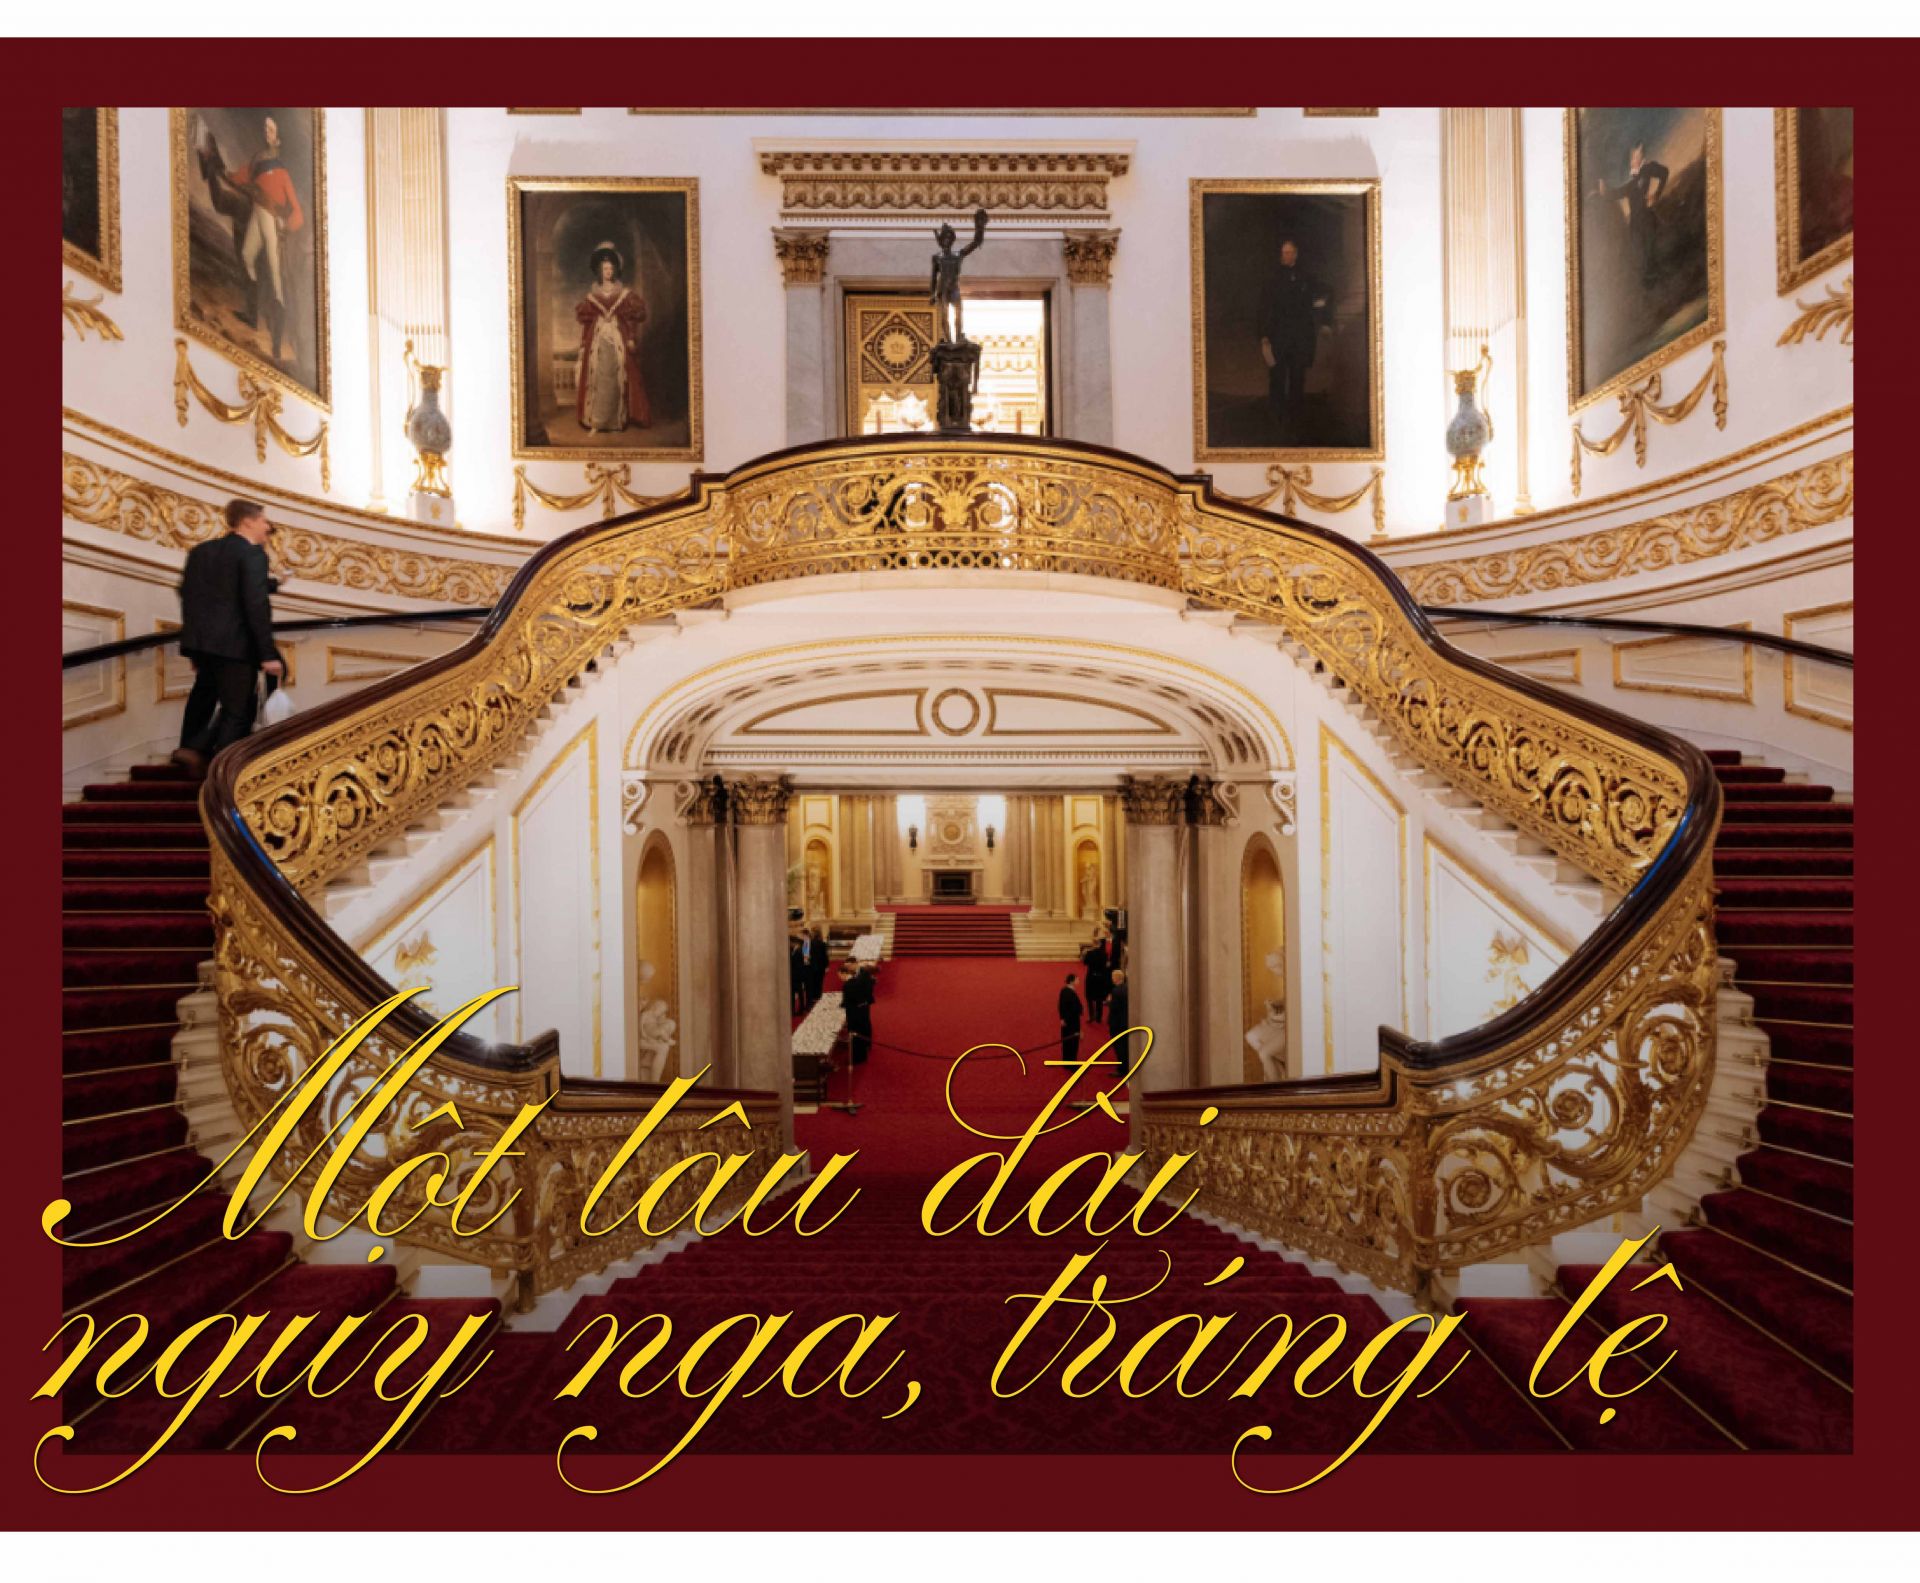 Các thiết kế nội thất đầu thế kỷ 19 vẫn còn được gìn giữ
nhiều trong Cung điện, nhiều trong số đó còn tồn tại, bao
gồm việc sử dụng rộng rãi các loại gạch vảy cá có màu sắc
rực rỡ và một loại đá khác có màu xanh và hồng. Tất cả
các phòng trong cung điện Buckingham đều được trang
hoàng nội thất lịch sự. Để khách tham quan có thể hiểu rõ
rệt hơn về cuộc sống của Hoàng gia cung điện đã mở cửa
19 phòng khách cho mọi người du lịch. Tới đây, du khách
sẽ được tận mắt chứng kiến cuộc sống xa hoa lộng lẫy với
bộ sưu tập đồ nội thất và những bức tranh quý nhất toàn
cầu.
Điện Buckingham có diện tích sàn 77.000 m2. Cung điện
có tất cả 19 phòng khách, 52 phòng ngủ dành cho khách và
các thành viên trong hoàng gia, 78 phòng tắm, 188 phòng
dành cho nhân viên của cung điện, 92 phòng làm việc.
Cung điện là nơi Nữ hoàng Anh và các thành viên trong
hoàng tộc tiếp đãi khách và tổ chức các nghi lễ quý phái.
Tuy không phải là phòng trưng bày nghệ thuật hay bảo
tàng, bộ sưu tập nghệ thuật cá nhân trong cung điện có thể
sánh với nhiều bộ sưu tập quốc gia. Và thật không ngoa
khi nói cung điện Buckingham chính là một bảo tàng nghệ
thuật hàng đầu nước Anh khi nơi đây được trang hoàng
bằng vô số những bức tranh đầy chất nghệ thuật nổi tiếng,
hệ thống đèn treo sang trọng được kết nối bởi những chiếc
cầu thang gắn đá cẩm thạch tỉ mỉ.